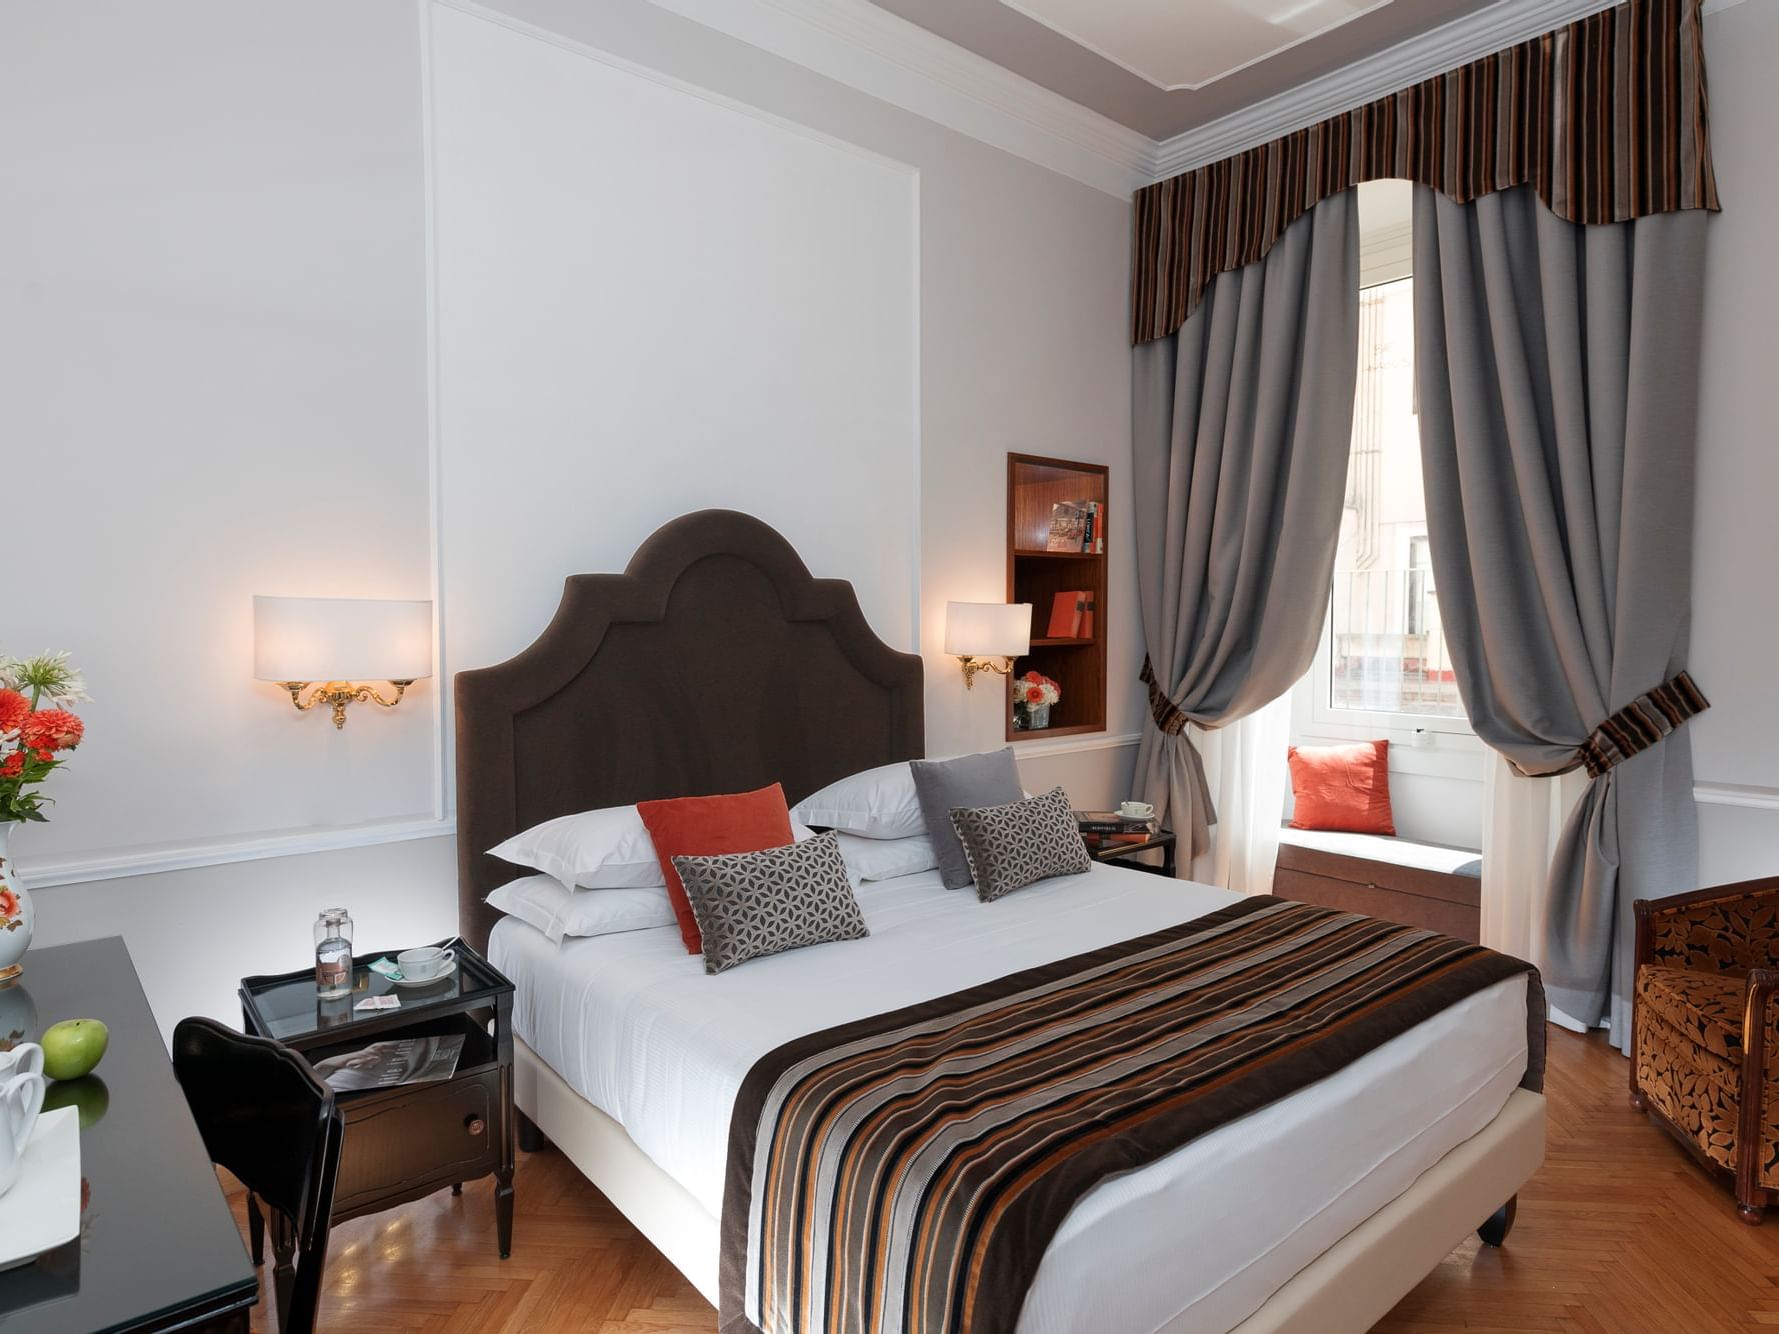 Premium Deluxe Room in Bettoja Hotel Massimo D'Azeglio